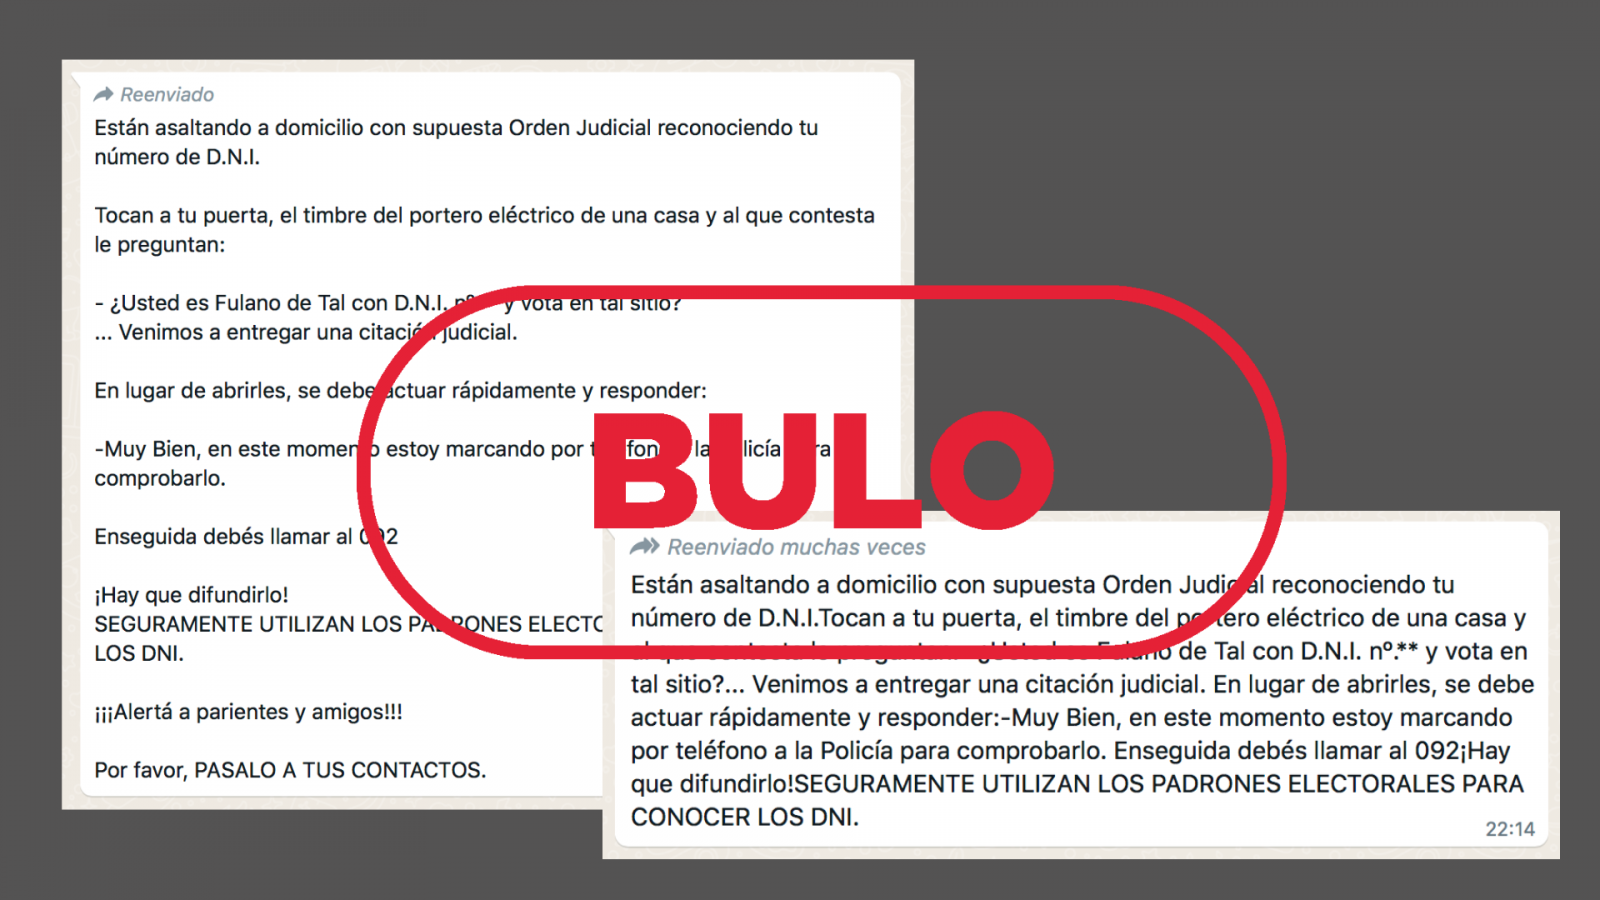 Mensajes que reproducen el bulo del asalto a domicilios con orden judicial con el sello de "BULO" en rojo de VerificaRTVE